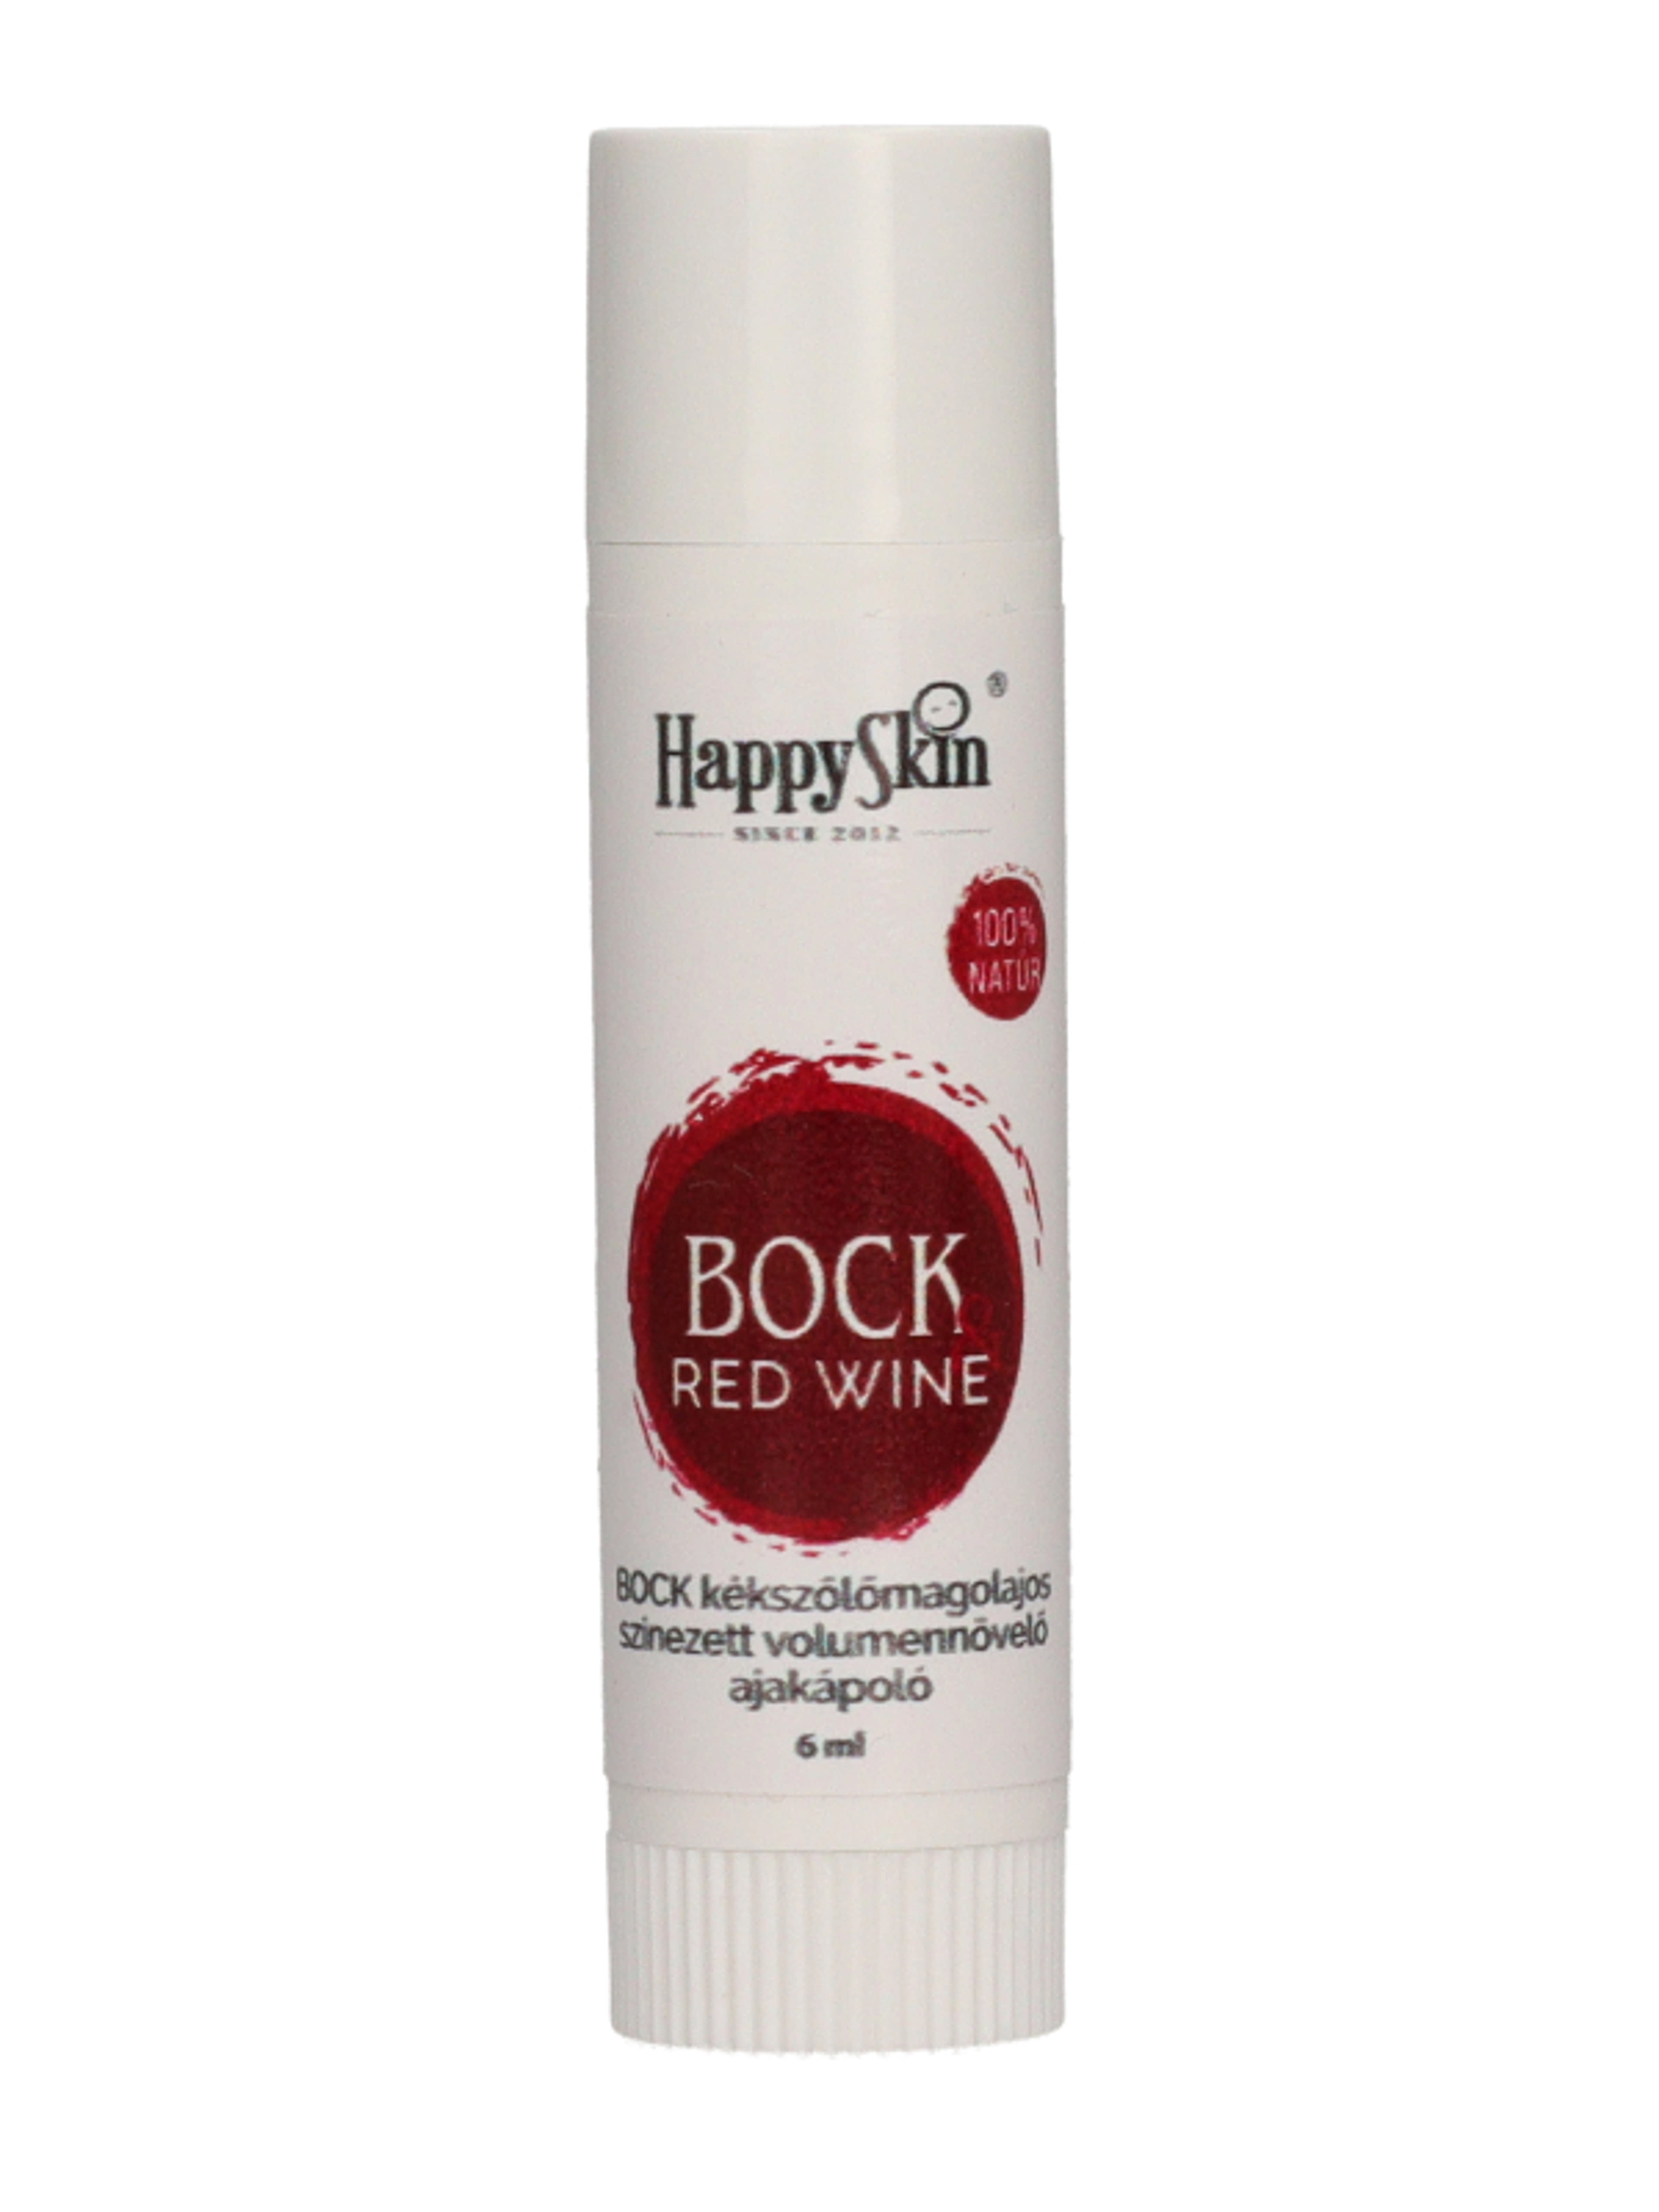 HappySkin Bock akajápoló vörös bor - 6 ml